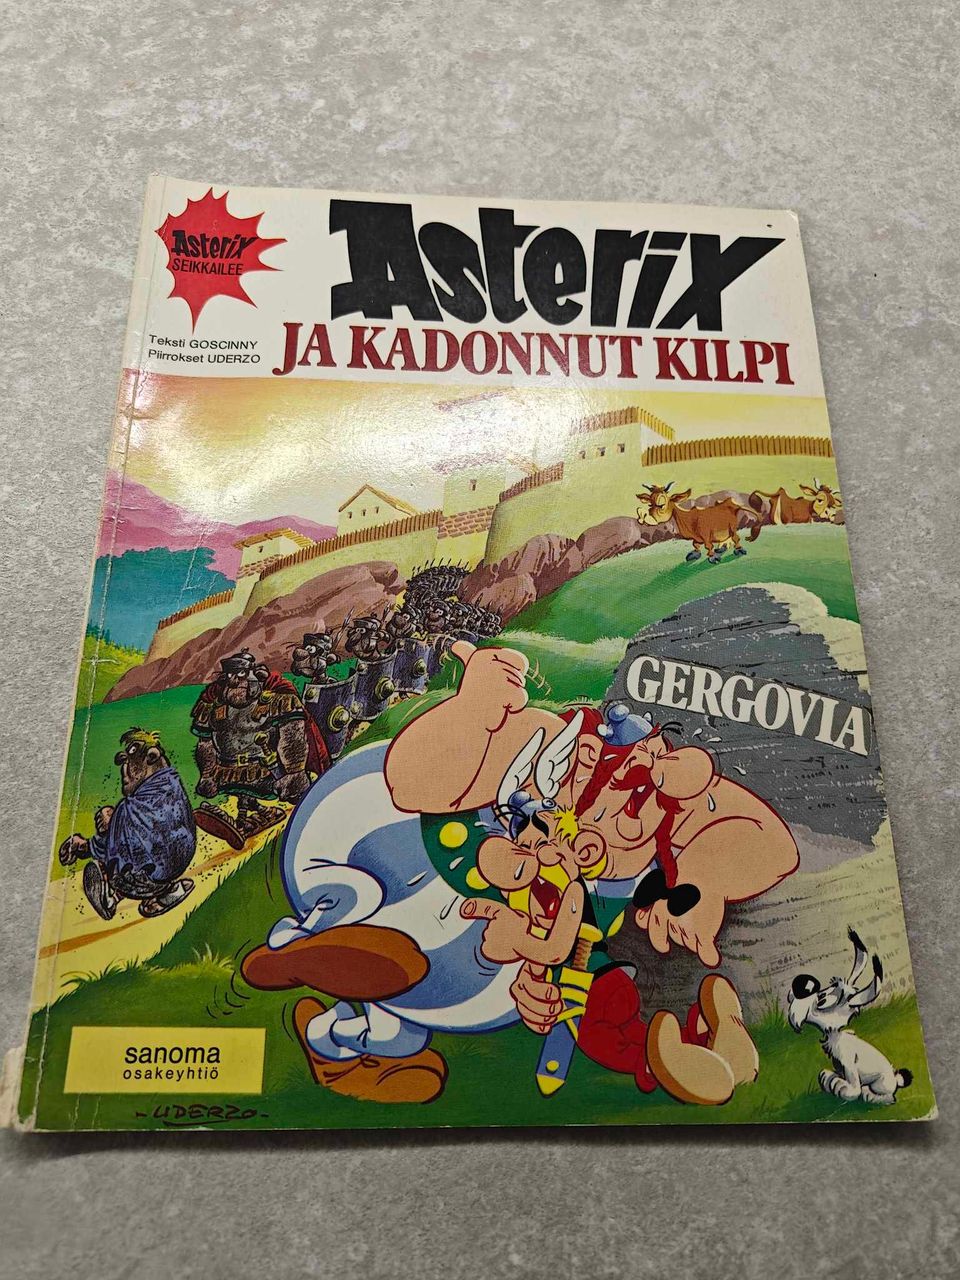 Asterix ja Kadonnut Kilpi